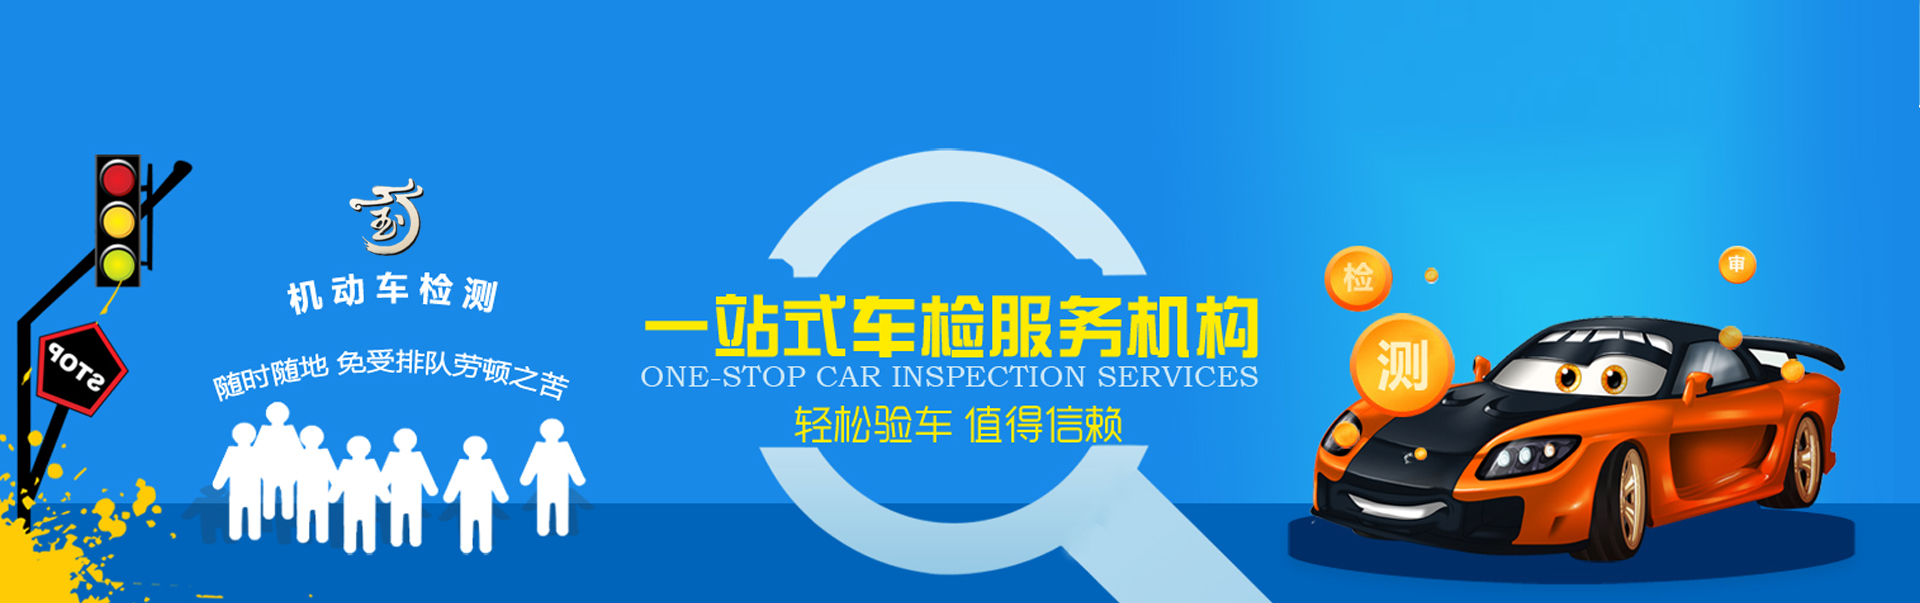 介绍贵州车辆检测公司最近关注的被猫抓伤死亡的男子,“吸猫”族需谨慎